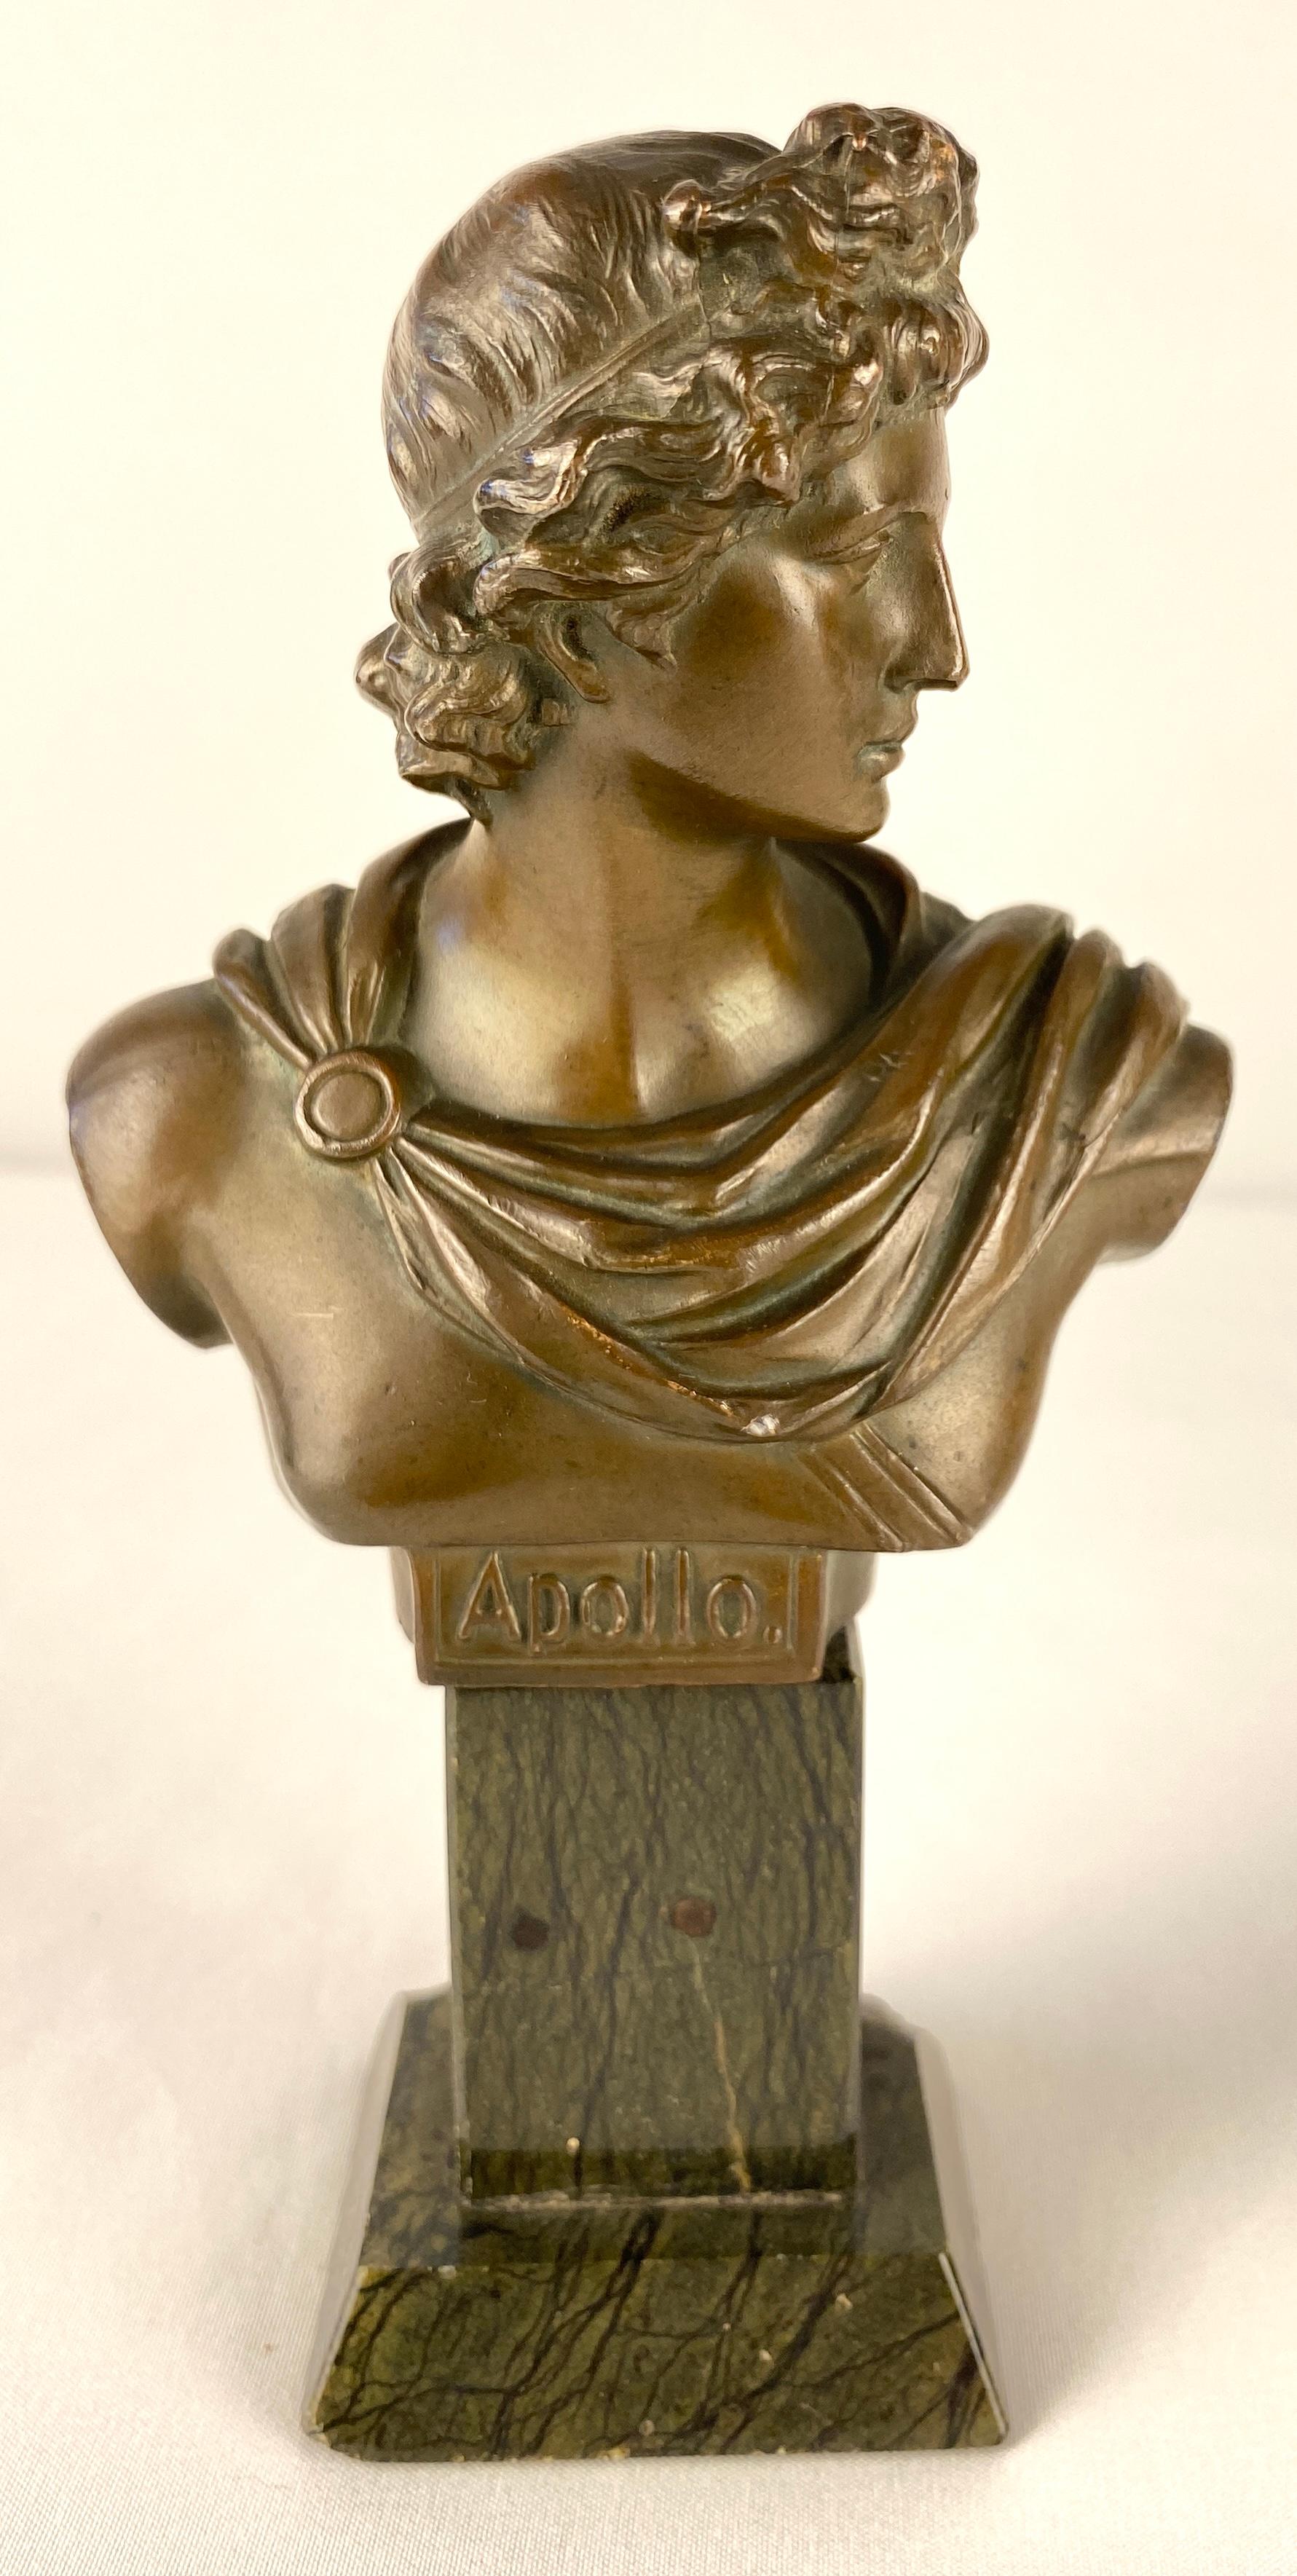 Paire de bustes en bronze très décoratifs en forme d'Apollo et de Diane ou de bustes revêtus de style néoclassique, datant du XIXe siècle.

Montés sur des socles carrés en marbre noir, ces bustes sont des merveilles de beauté et d'élégance